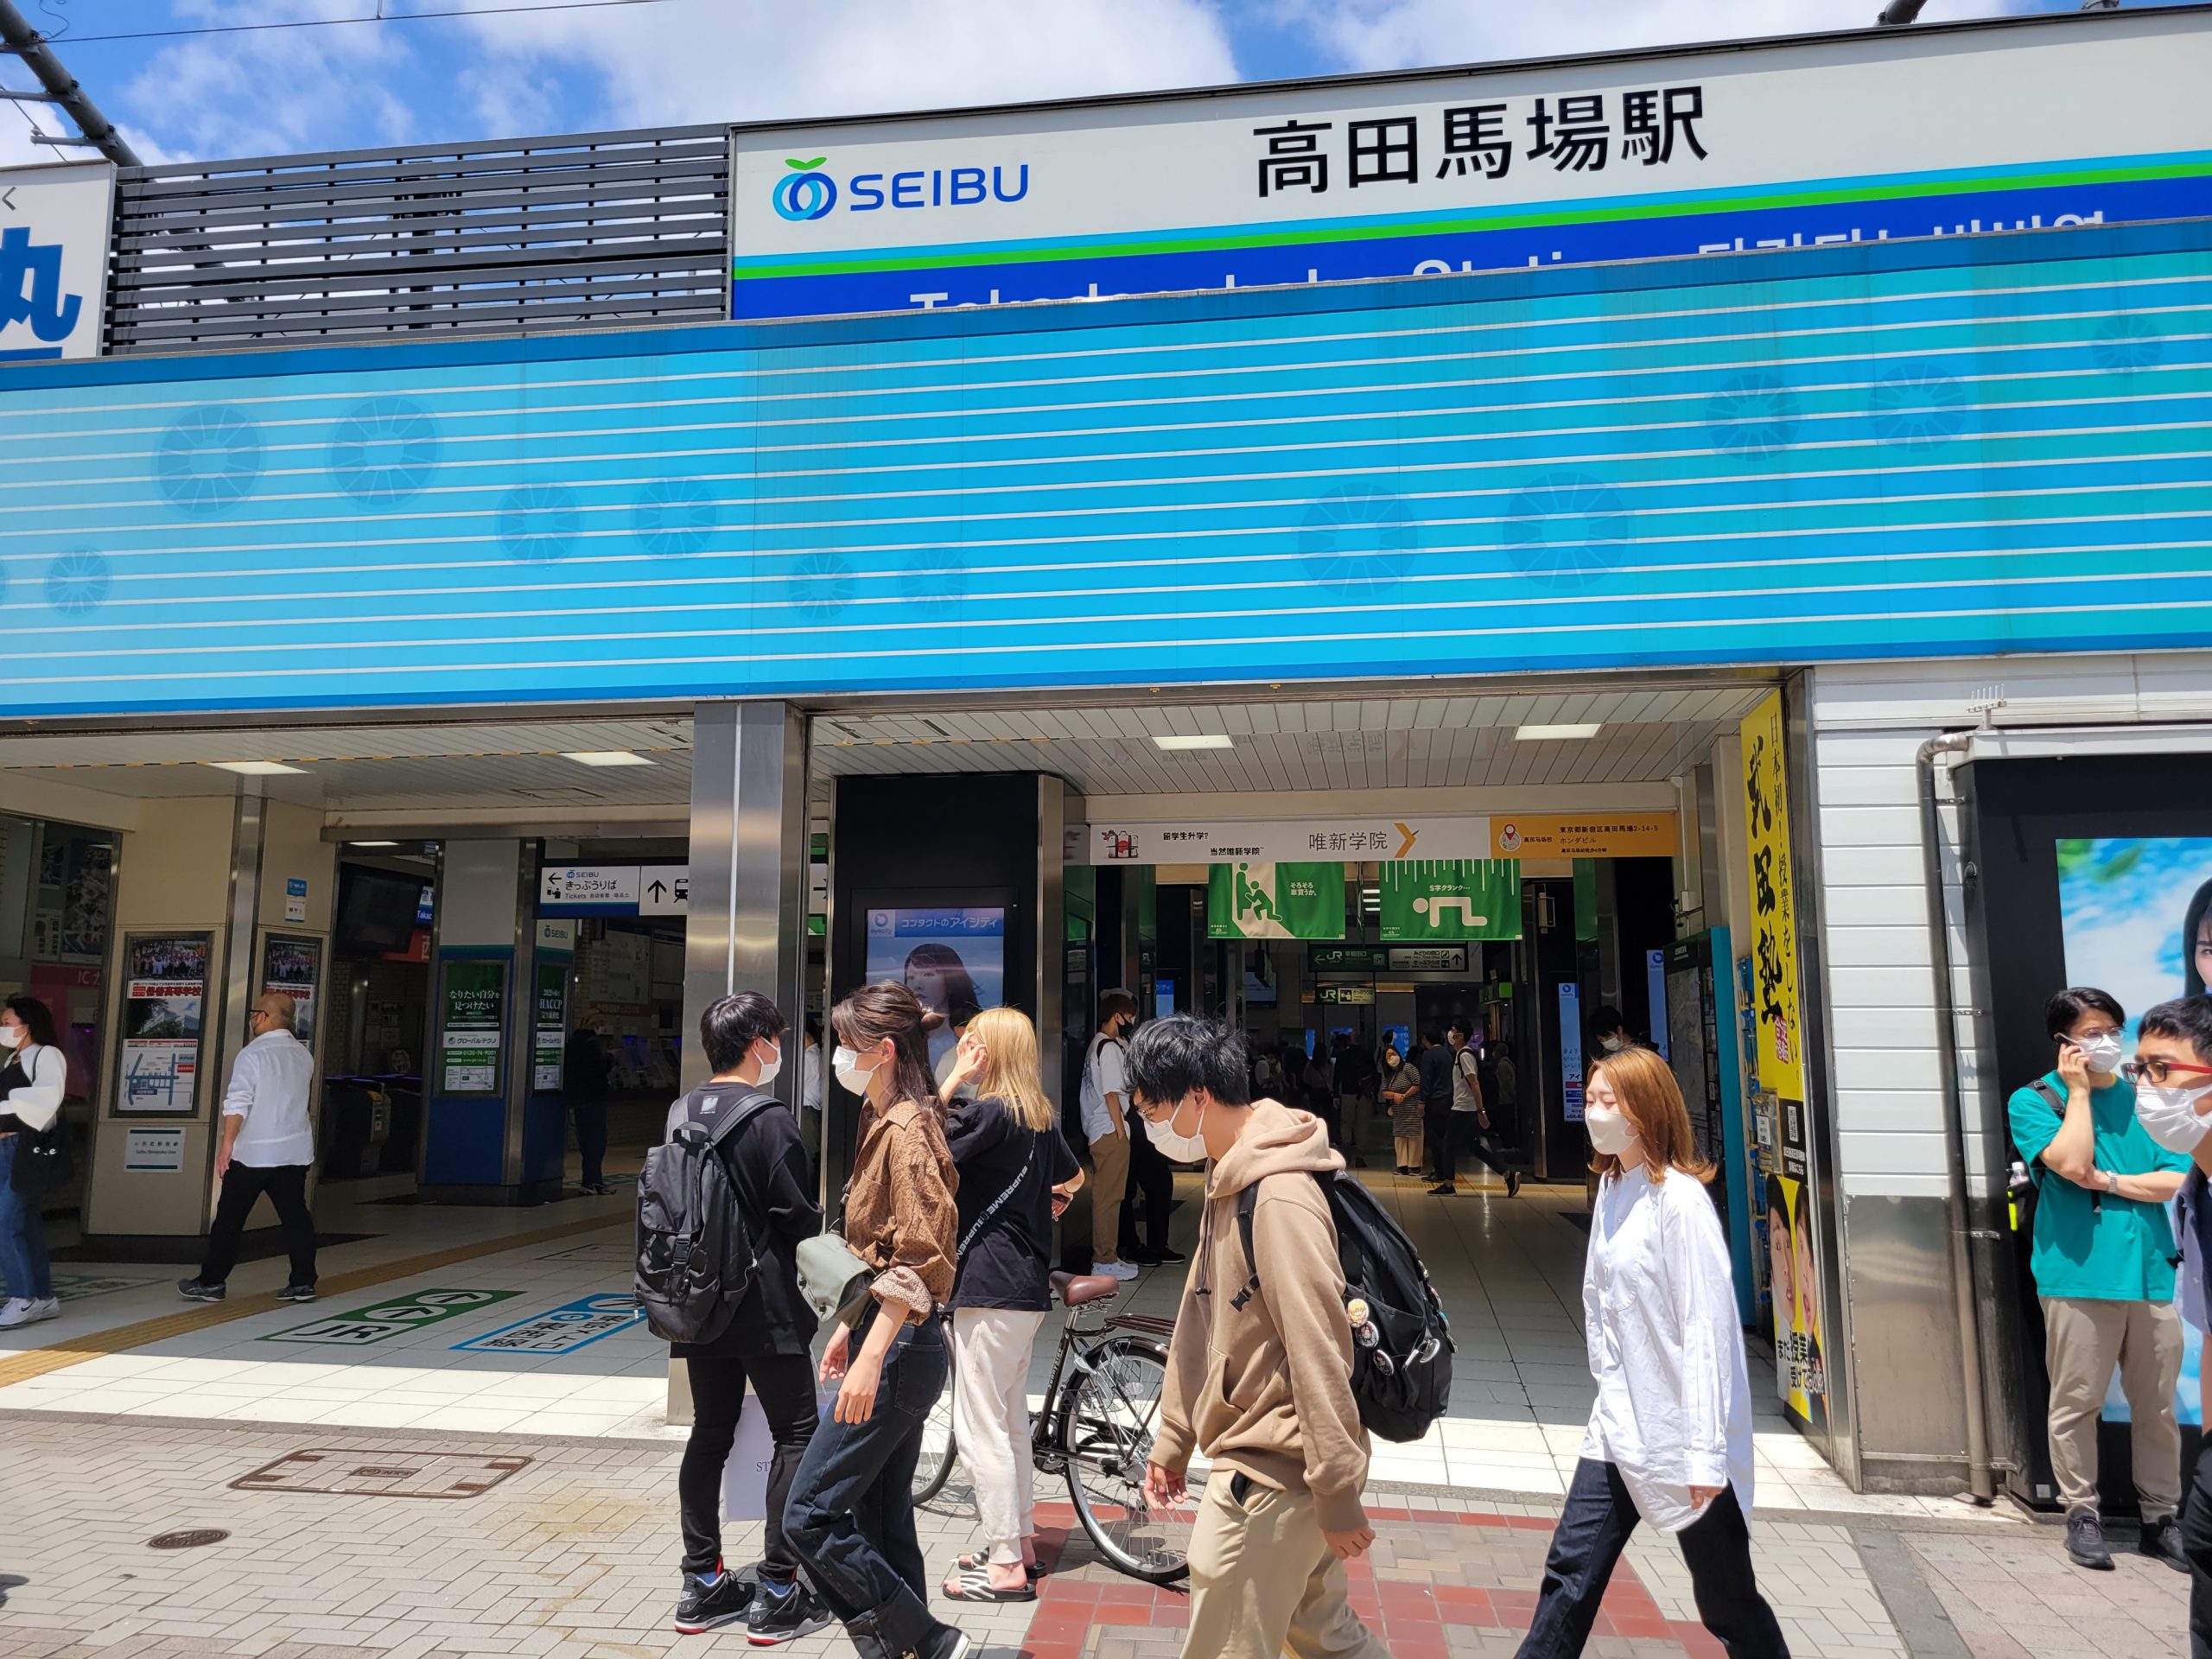 路上飲み防止 新宿区 高田馬場の駅前広場をフェンスで封鎖 コログ